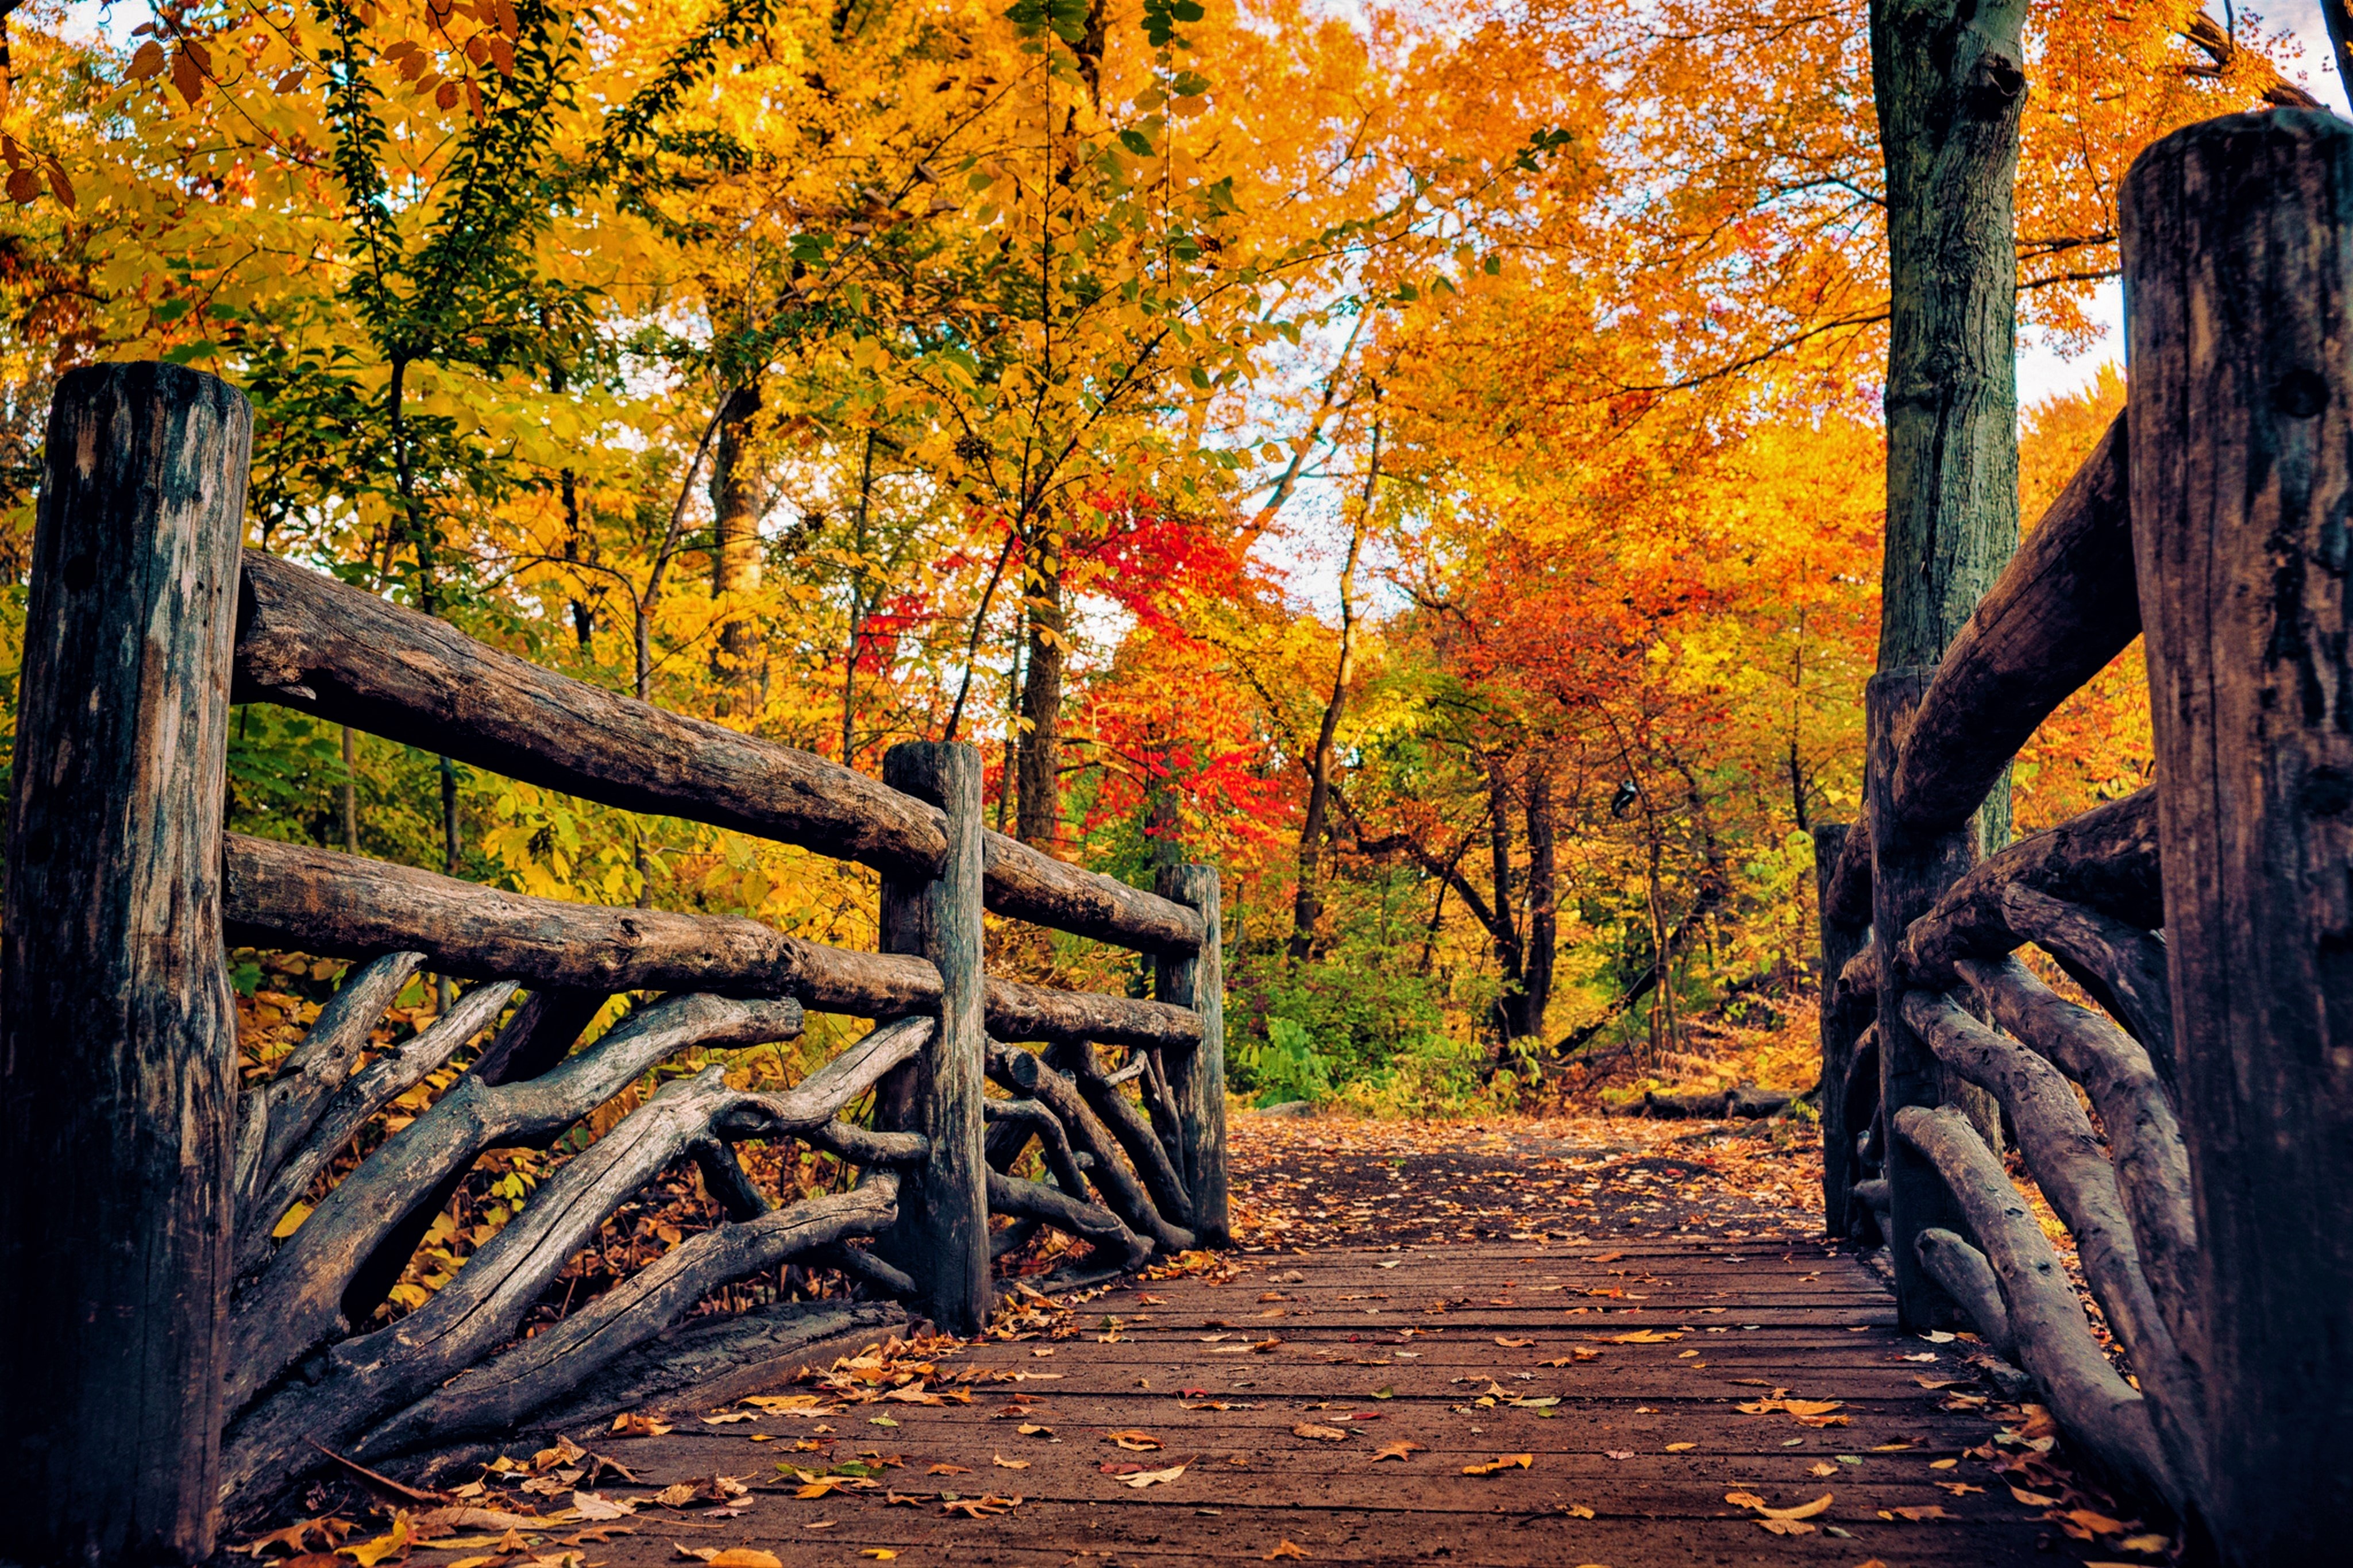 Bridge in Autumn Park